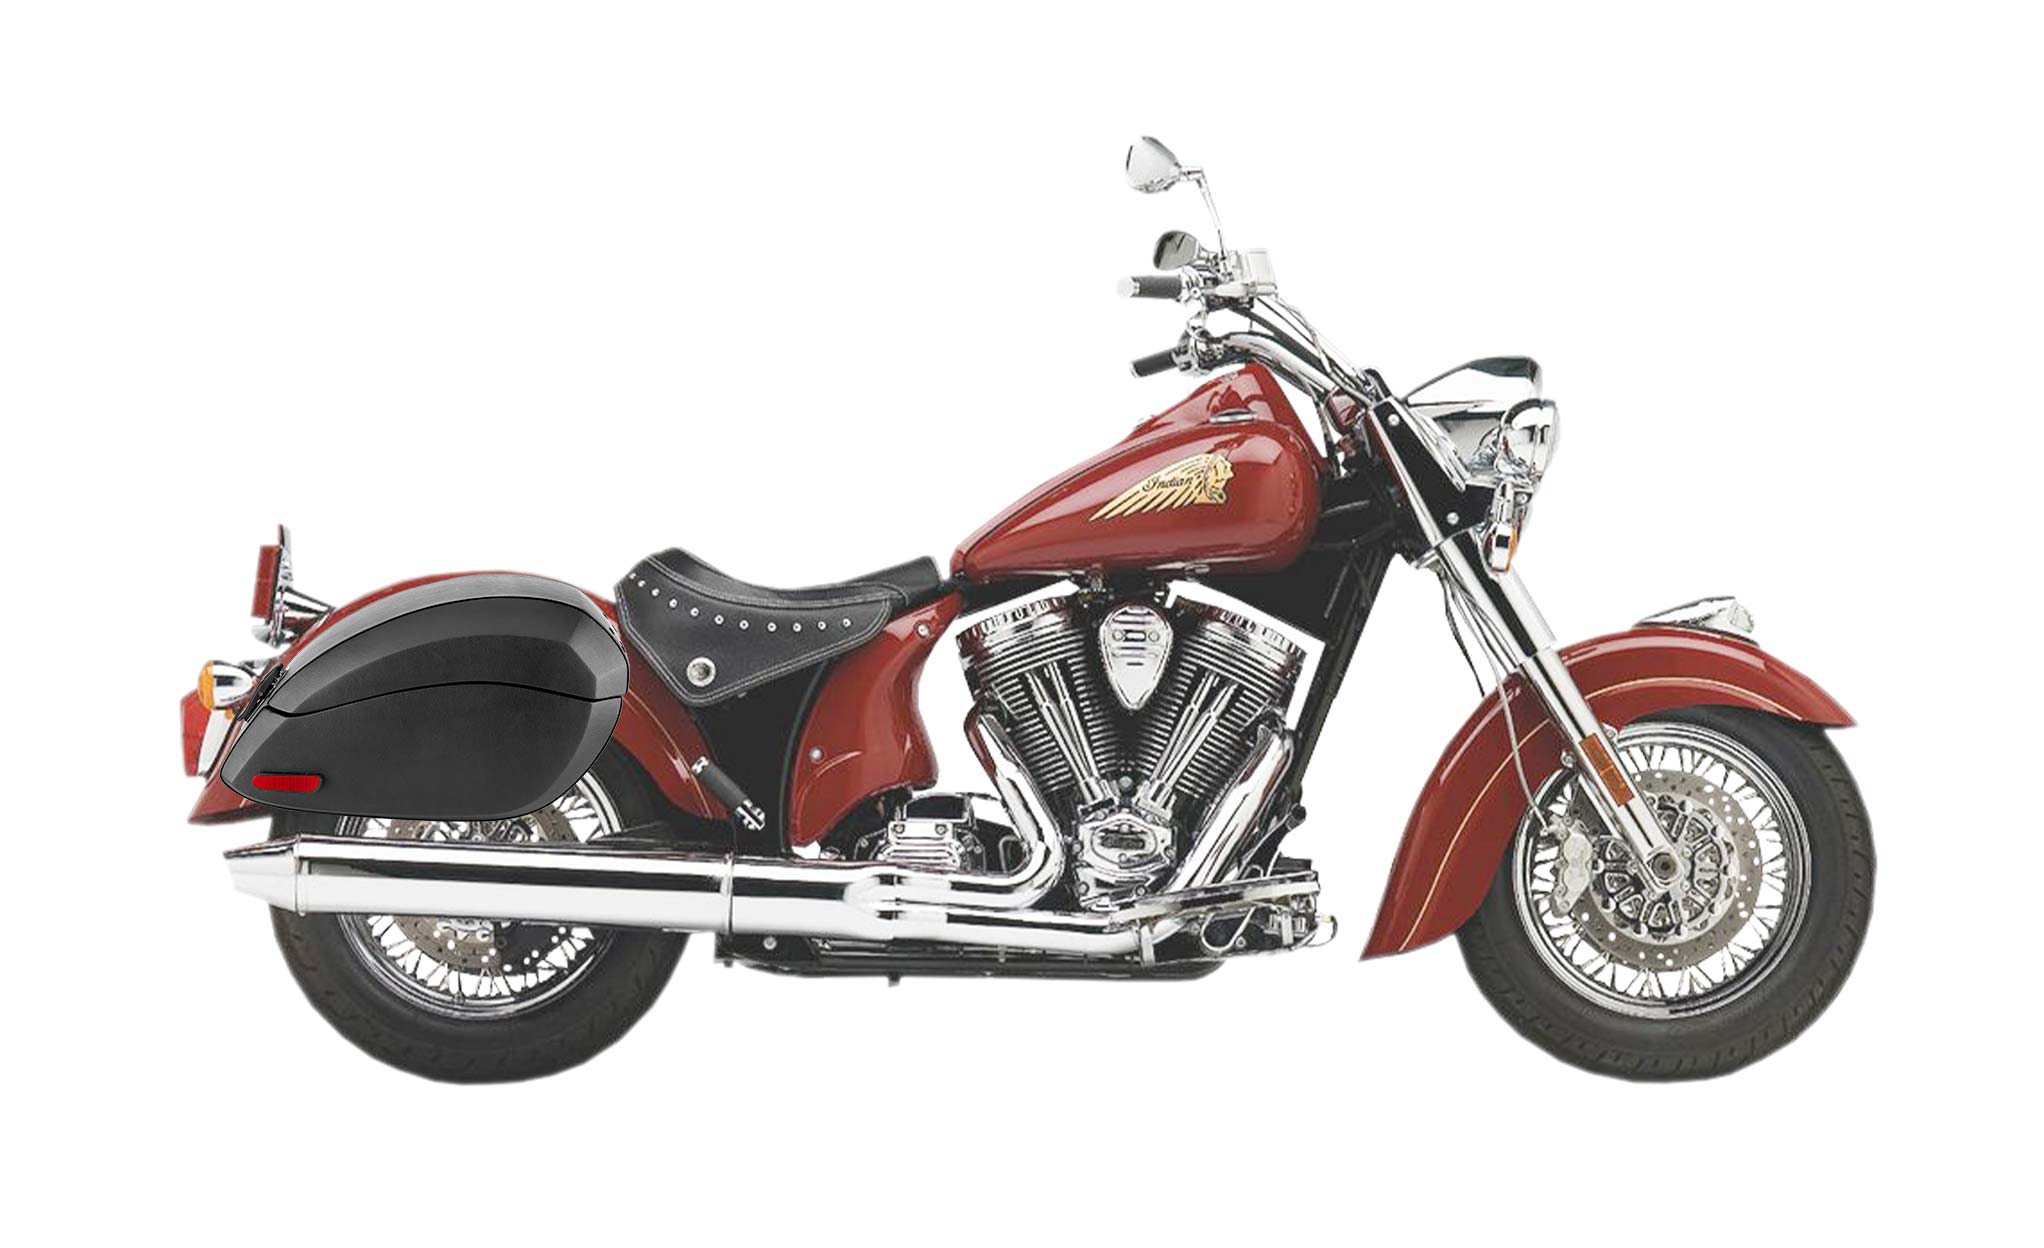 Viking Phantom Large Indian Chief Standard Leather Wrapped Motorcycle Hard Saddlebags on Bike Photo @expand